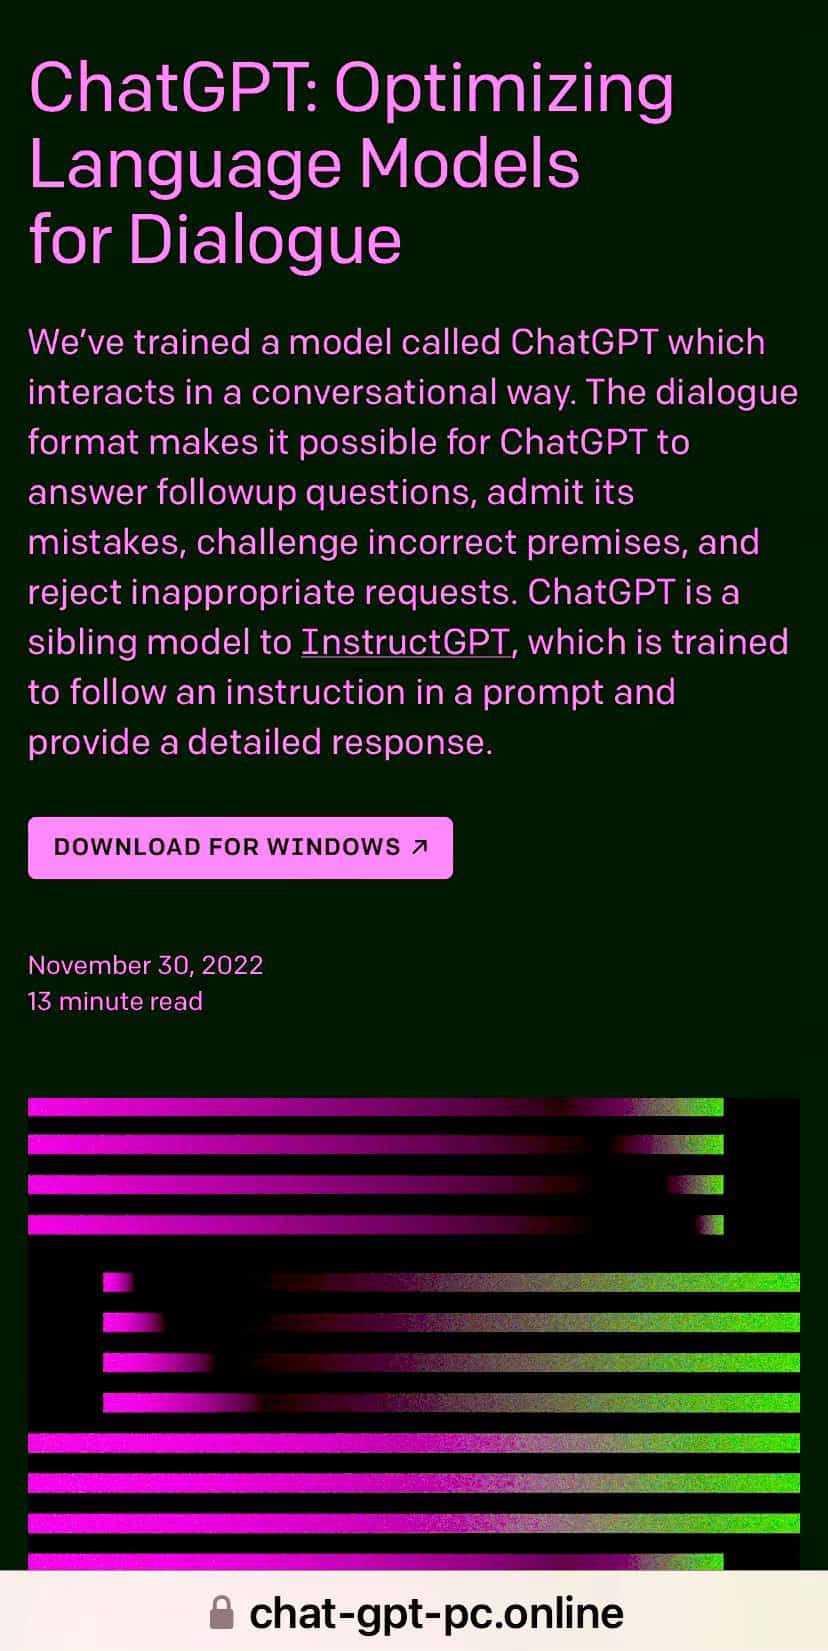 ระวัง ChatGPT ปลอม ปล่อยไวรัสมัลแวร์